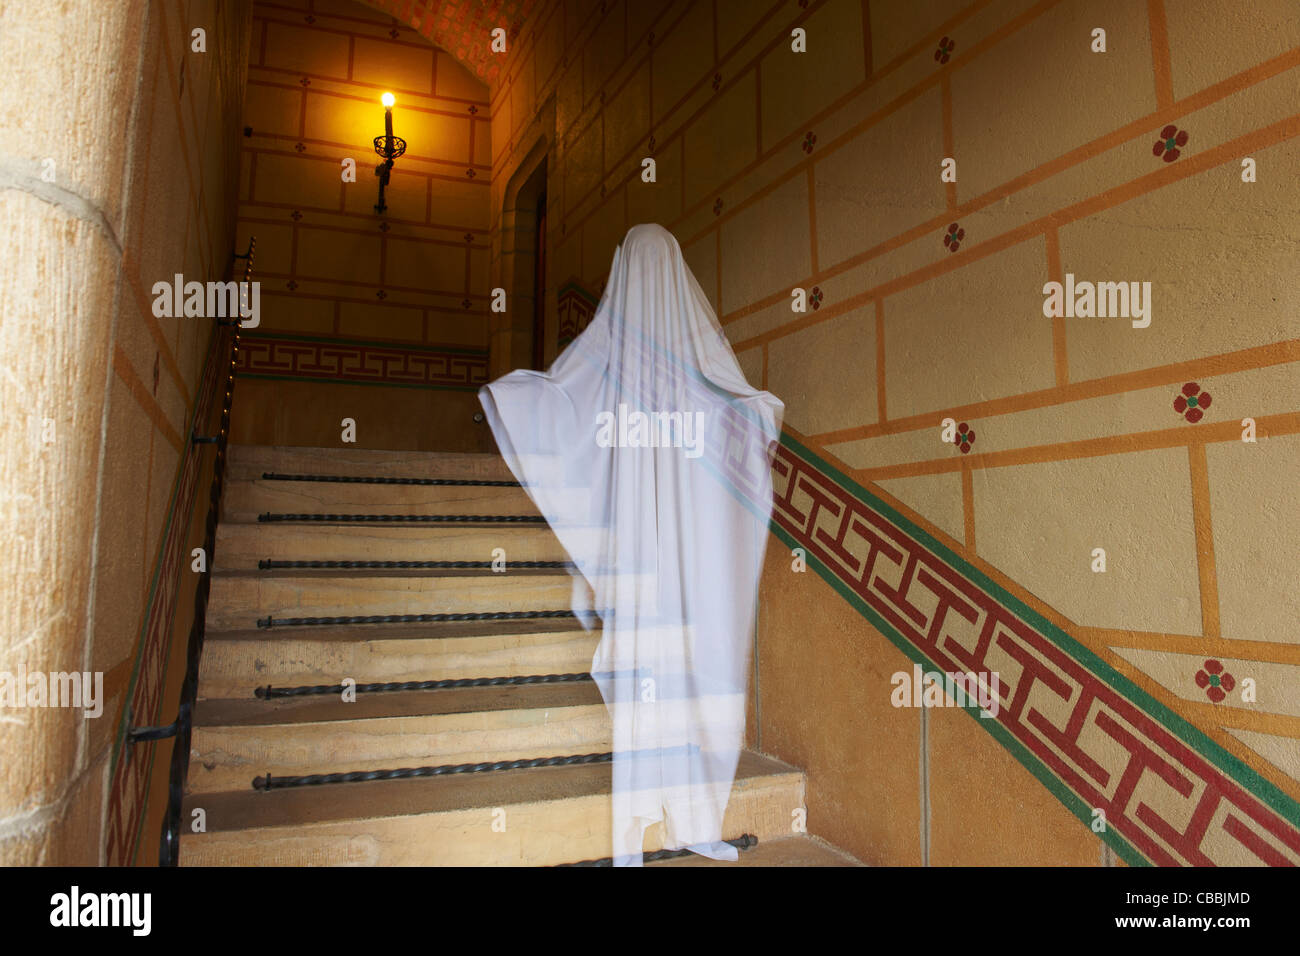 Ghost flottant sur des escaliers ornés Banque D'Images